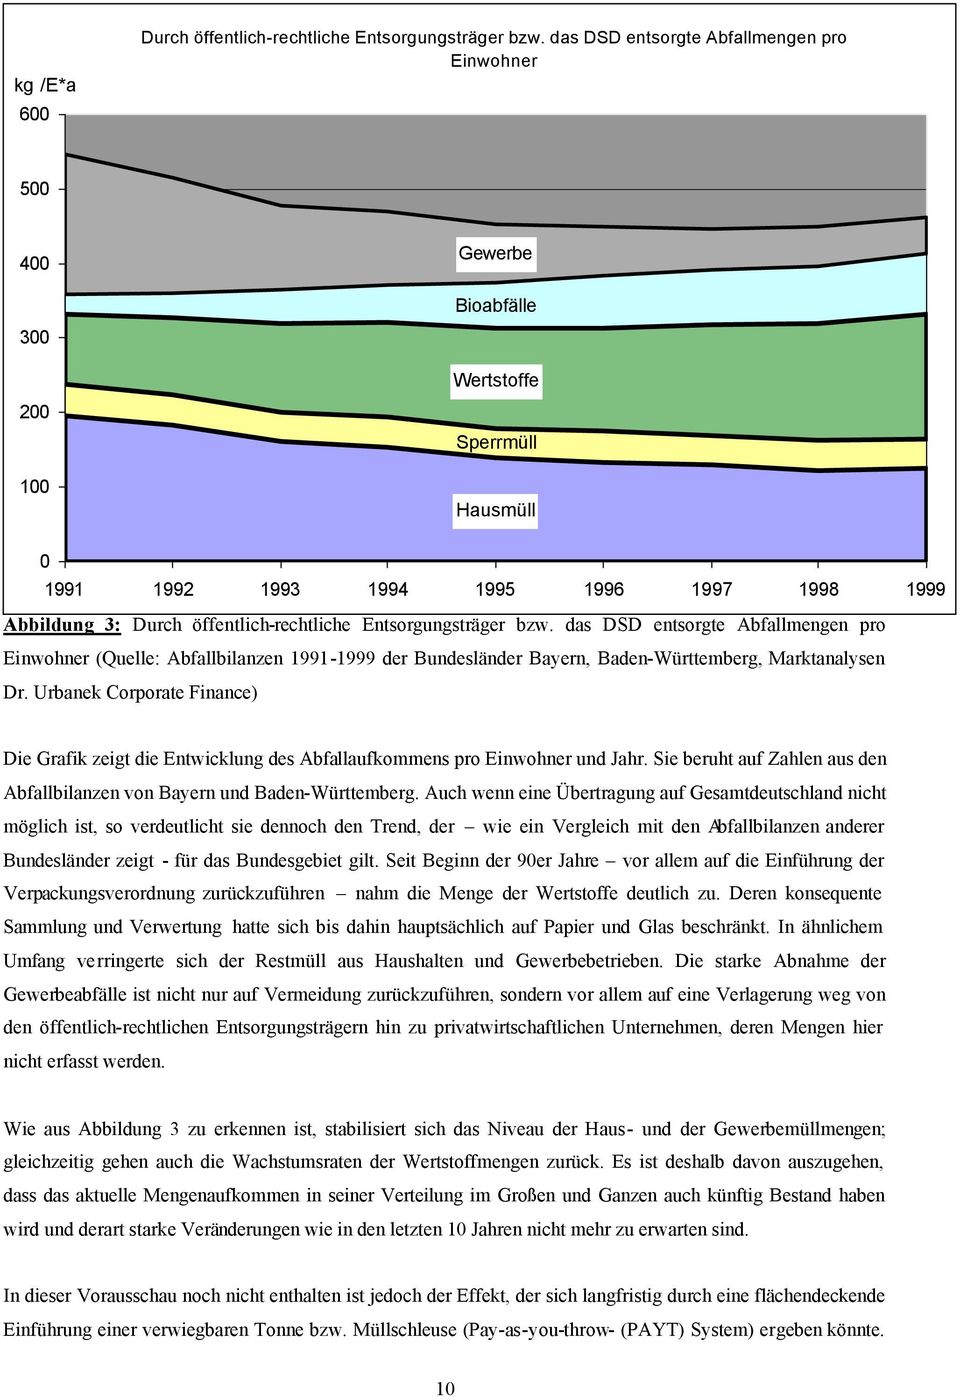 öffentlich-rechtliche Entsorgungsträger bzw. das DSD entsorgte Abfallmengen pro Einwohner (Quelle: Abfallbilanzen 1991-1999 der Bundesländer Bayern, Baden-Württemberg, Marktanalysen Dr.